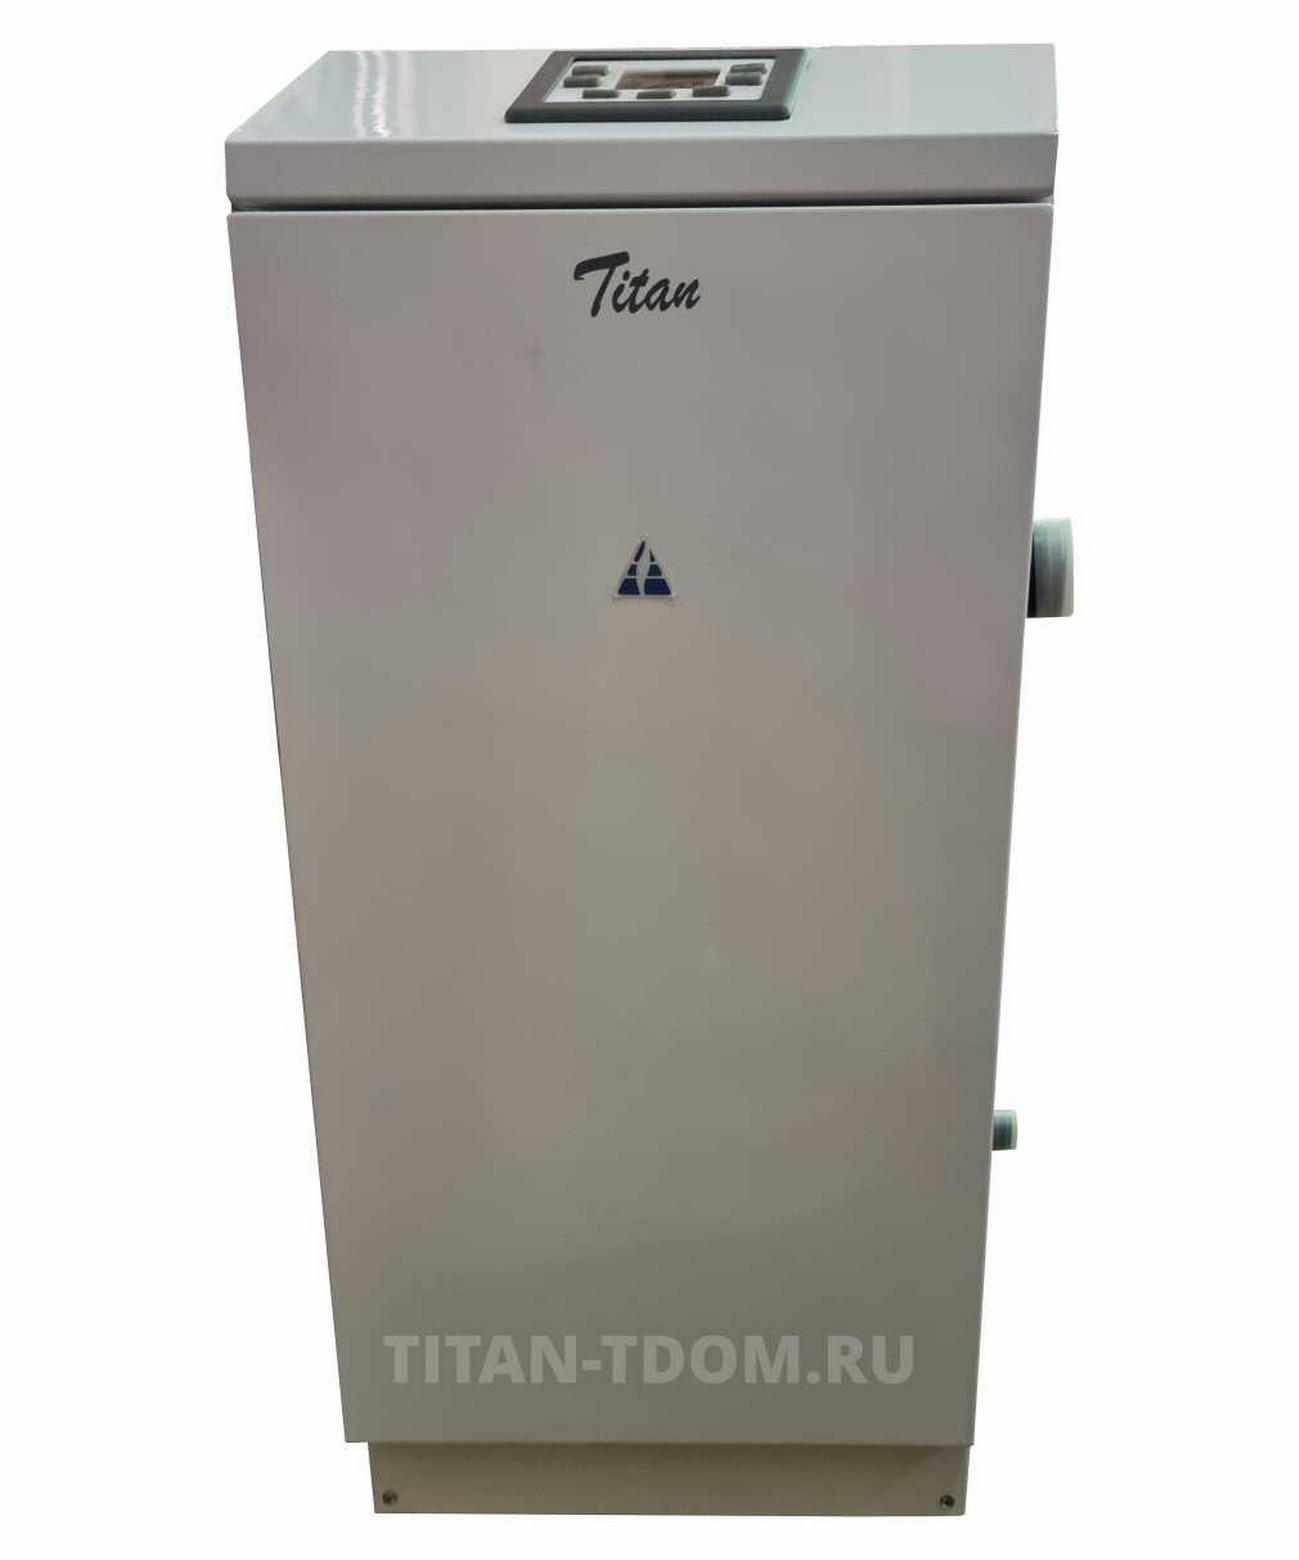 TITAN Z40M, 32кВт - Отопительные и водогрейные котлы 